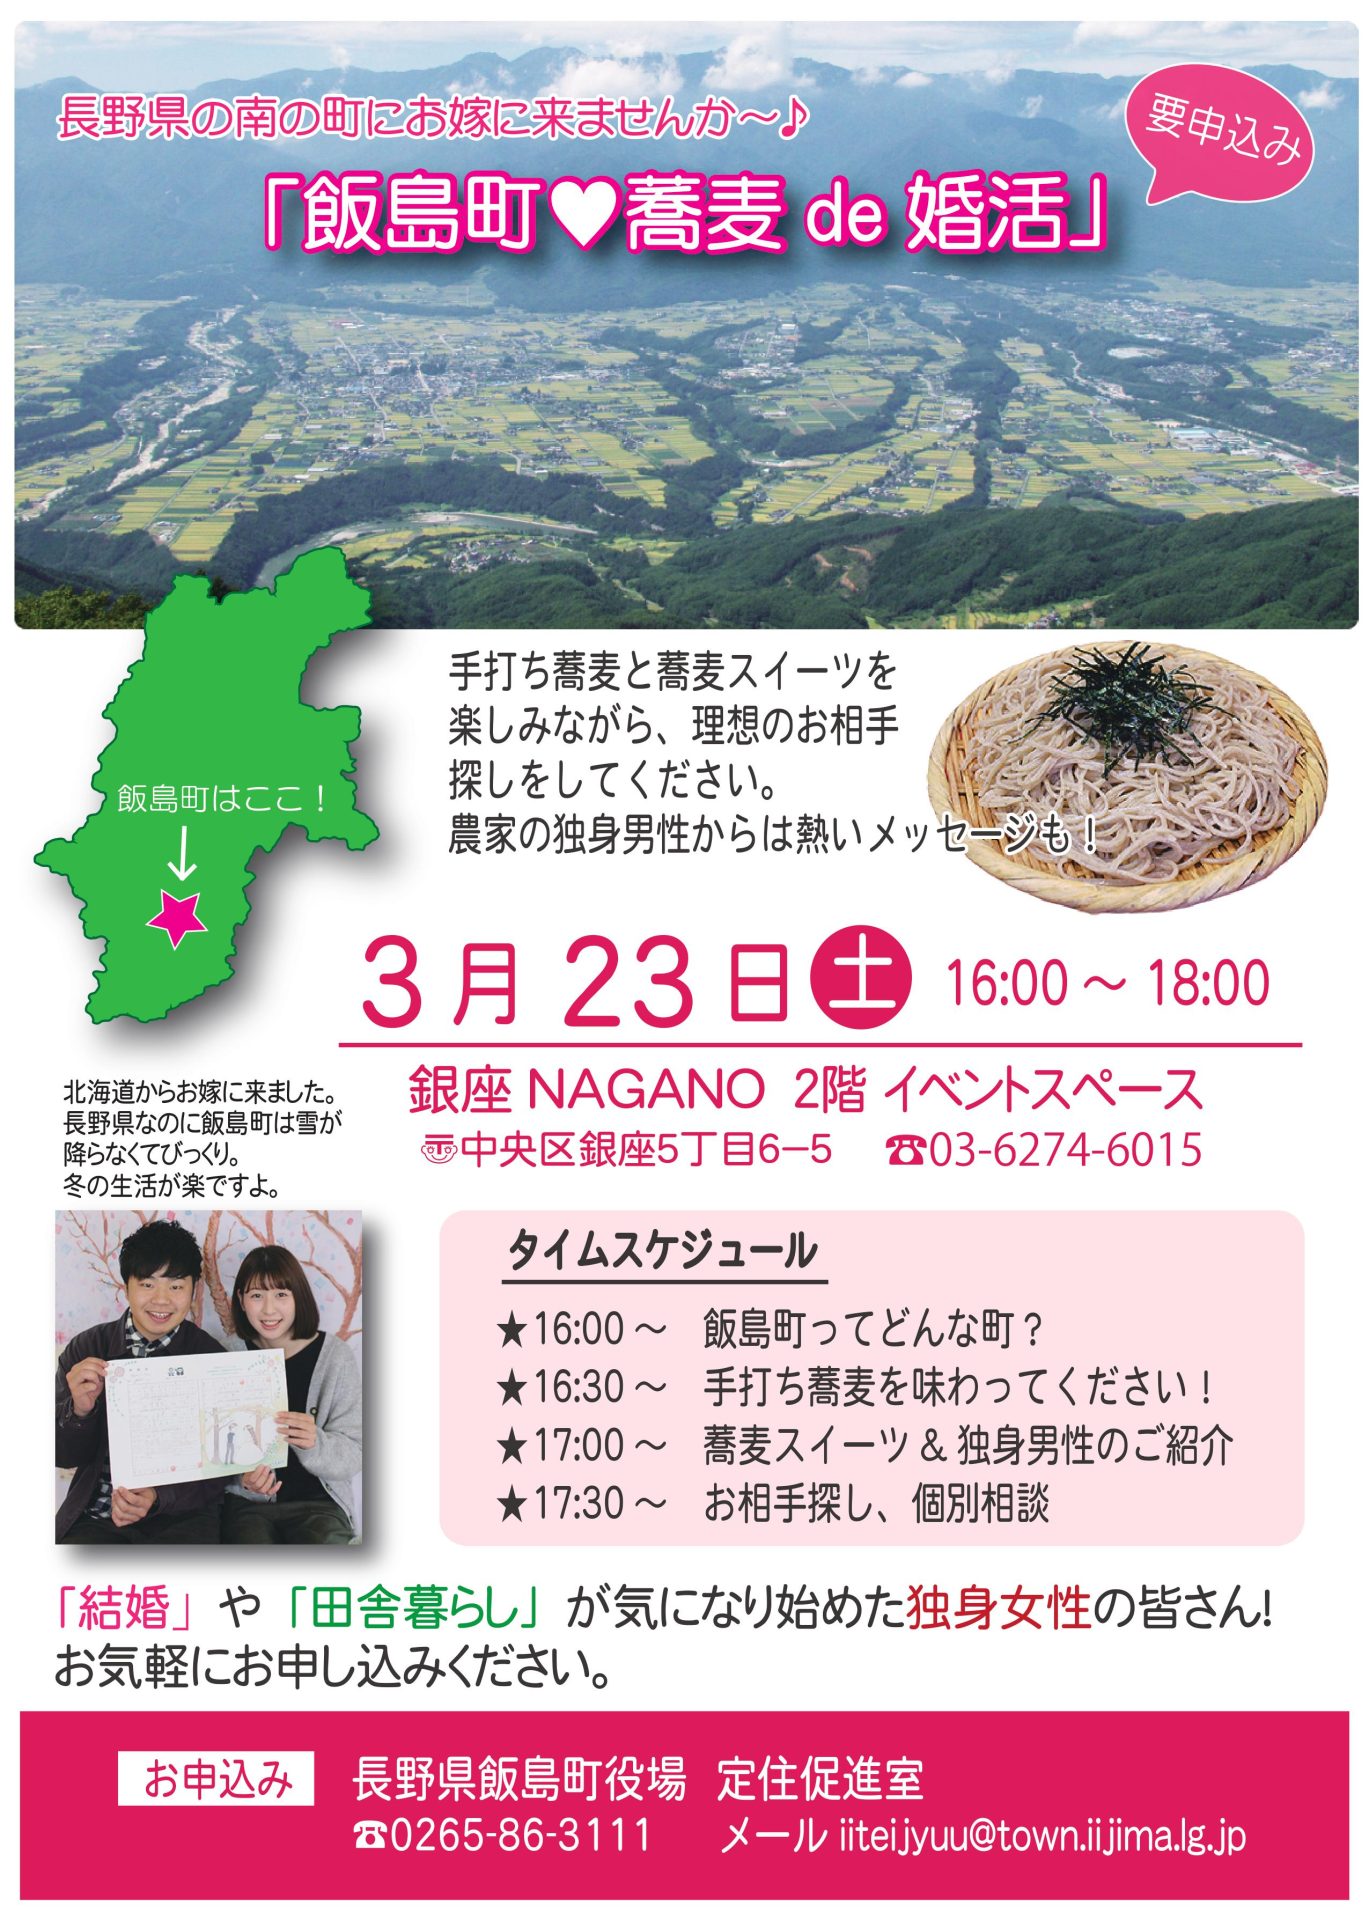 「飯島町★蕎麦de婚活」 | 移住関連イベント情報